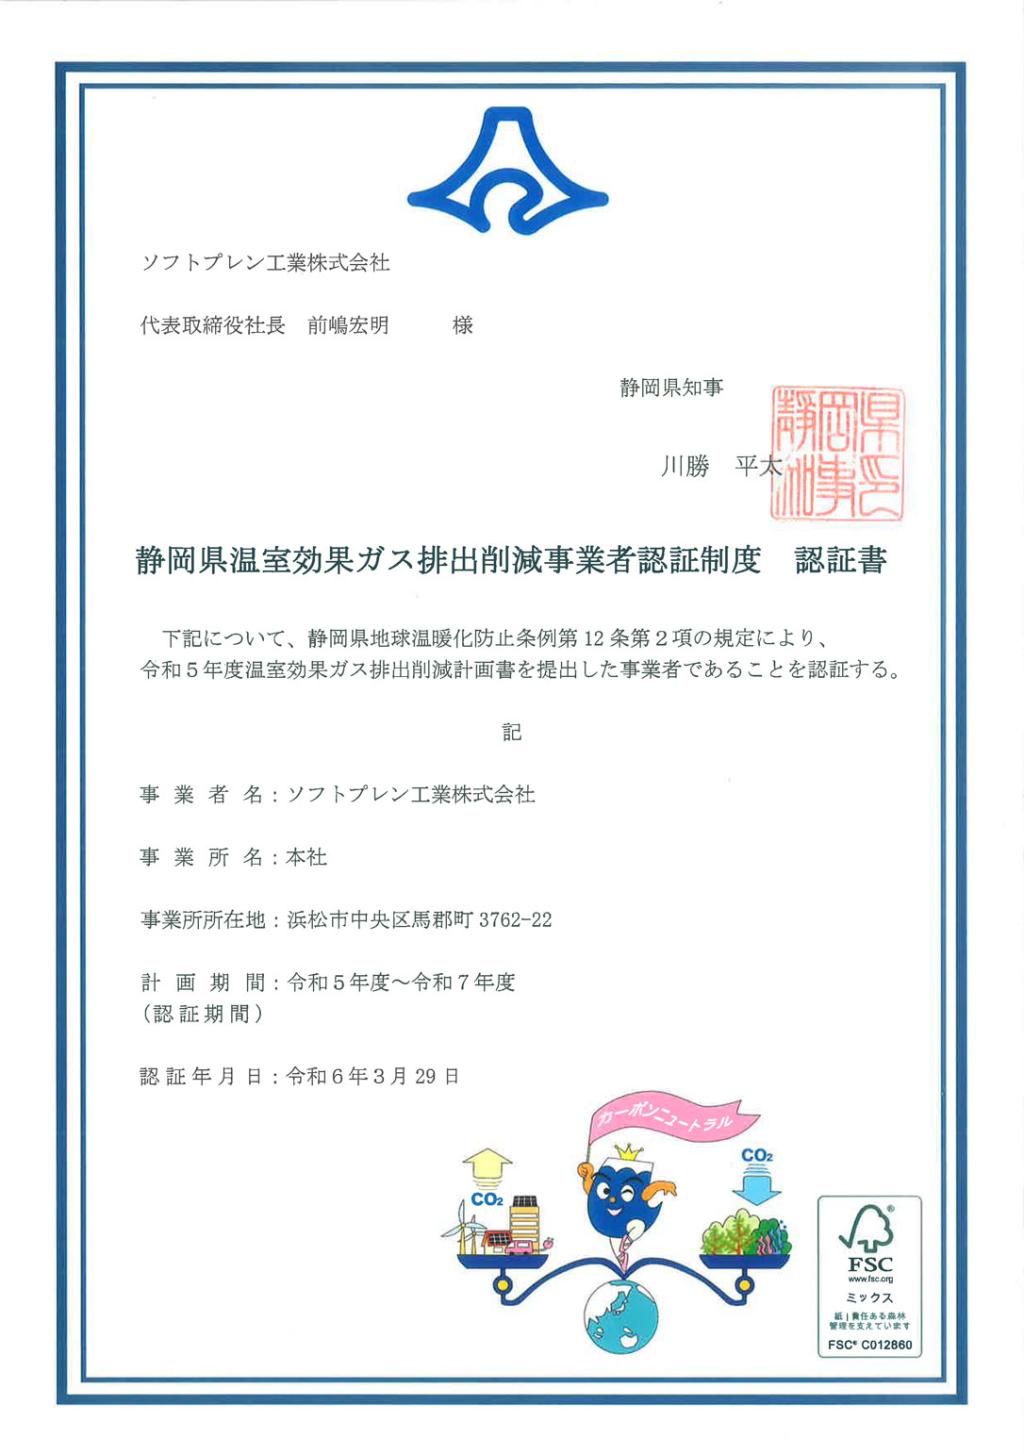 「静岡県温室効果ガス排出削減事業者認証制度」でソフトプレン工業株式会社が認証されました。